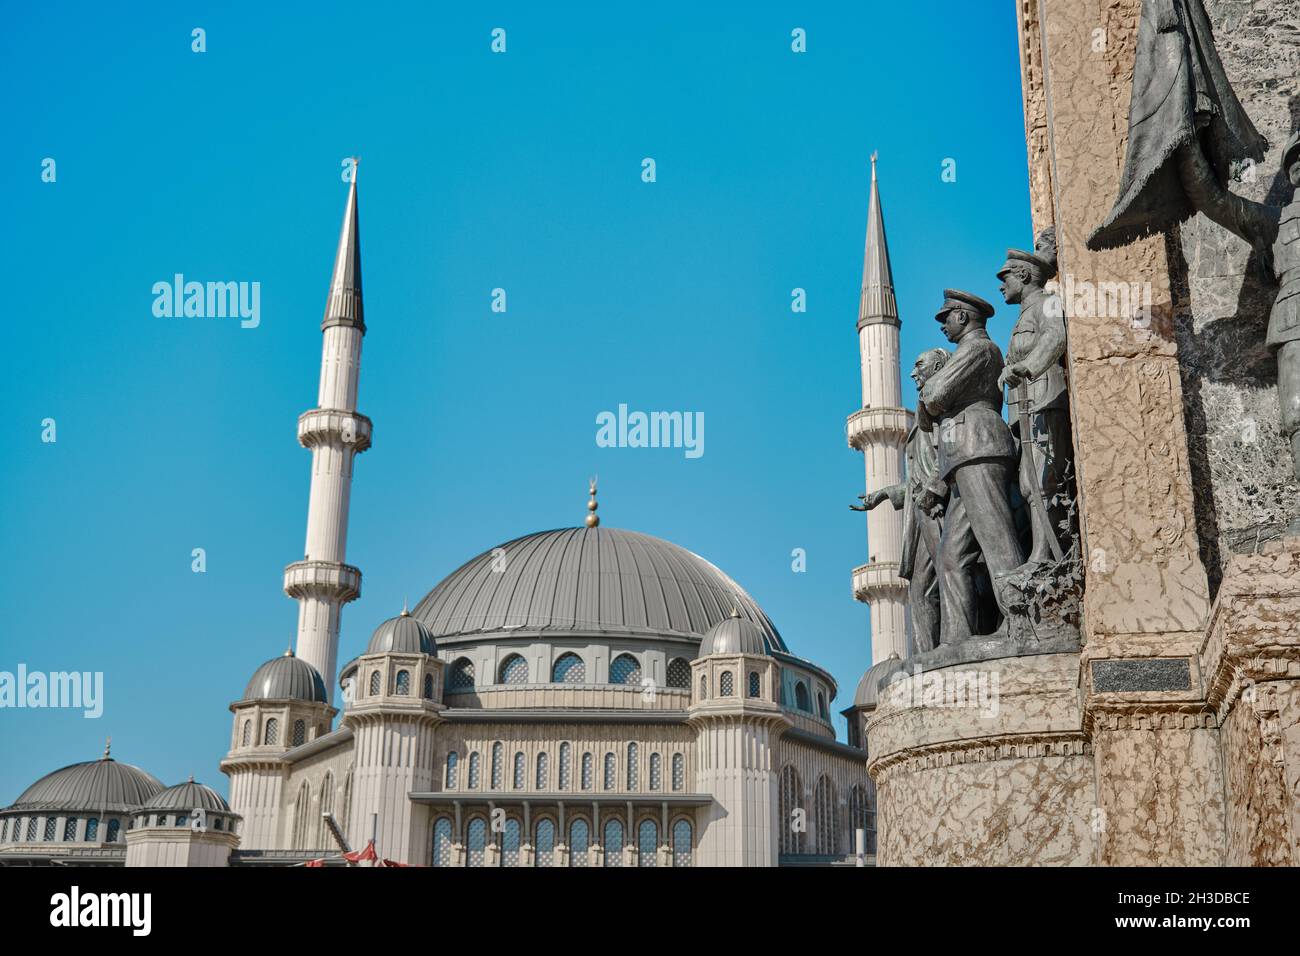 La moschea di Taksim è stata fondata in piazza taksim dietro il monumento ataturk della repubblica di taksim (cumhuriyet ant) alla fine del viale istiklal. Foto Stock